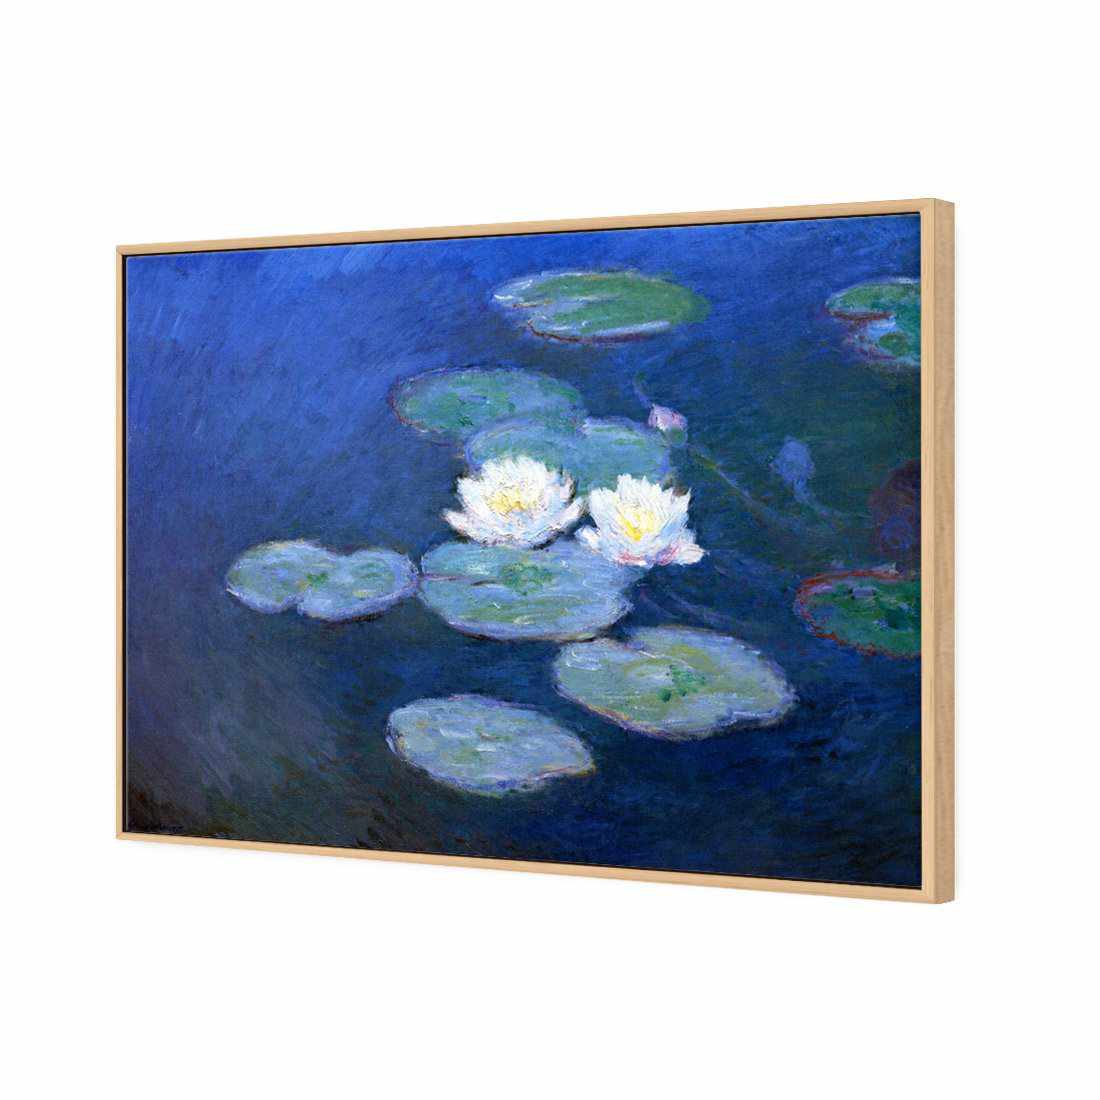 Water Lilies 7 - Monet Canvas Art-Canvas-Wall Art Designs-45x30cm-Canvas - Oak Frame-Wall Art Designs